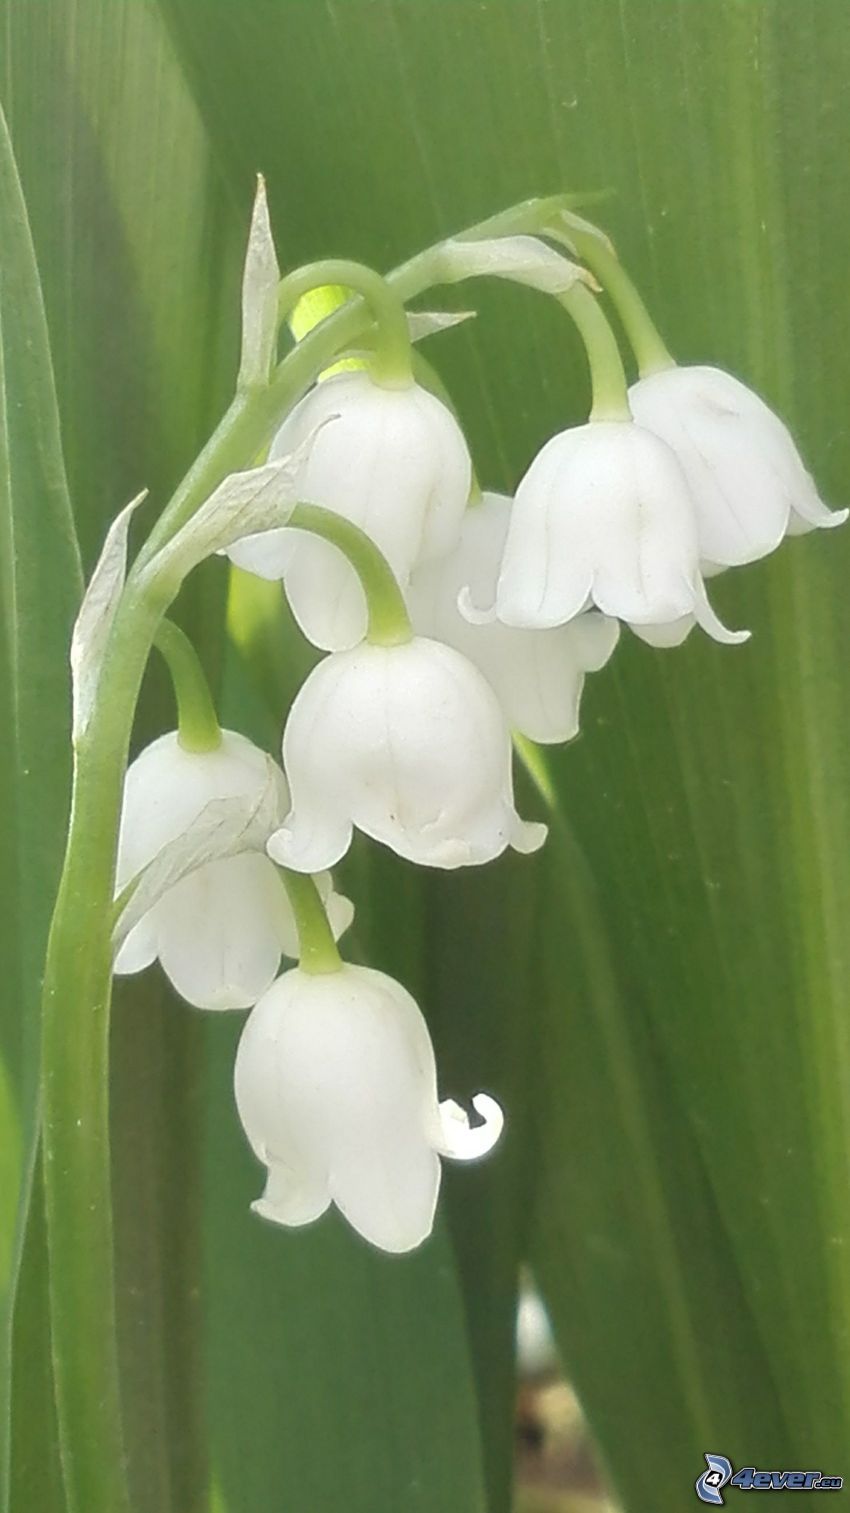 Maiglöckchen, weiße Blumen